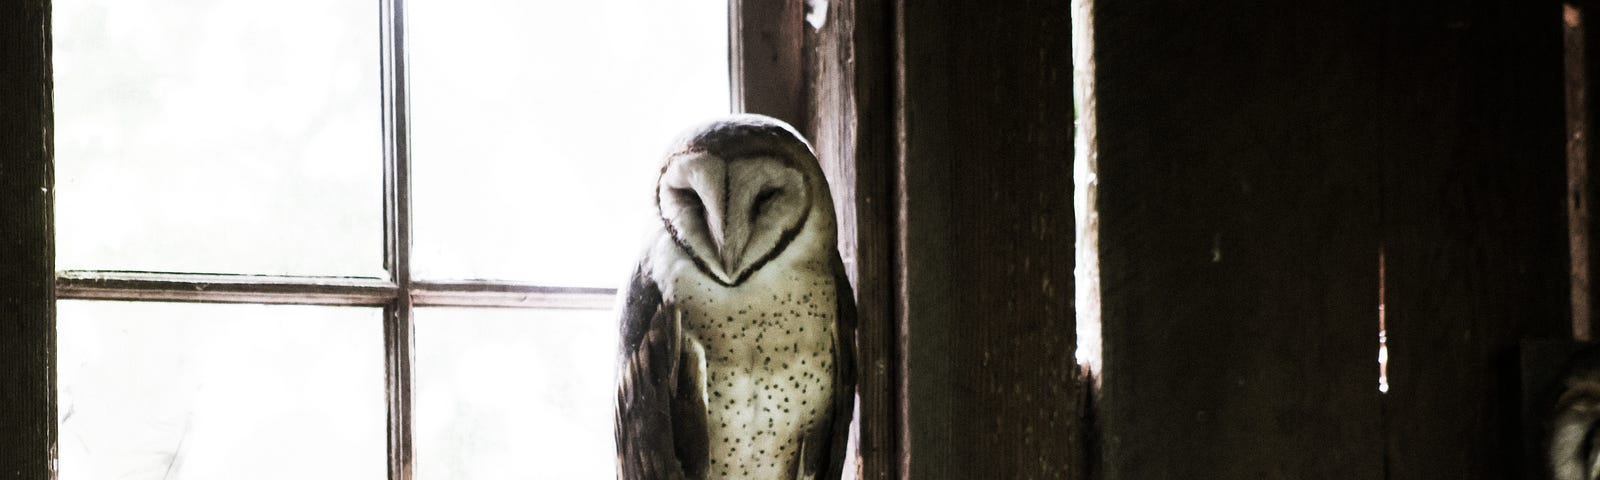 A barn owl sitting in a wood frame window